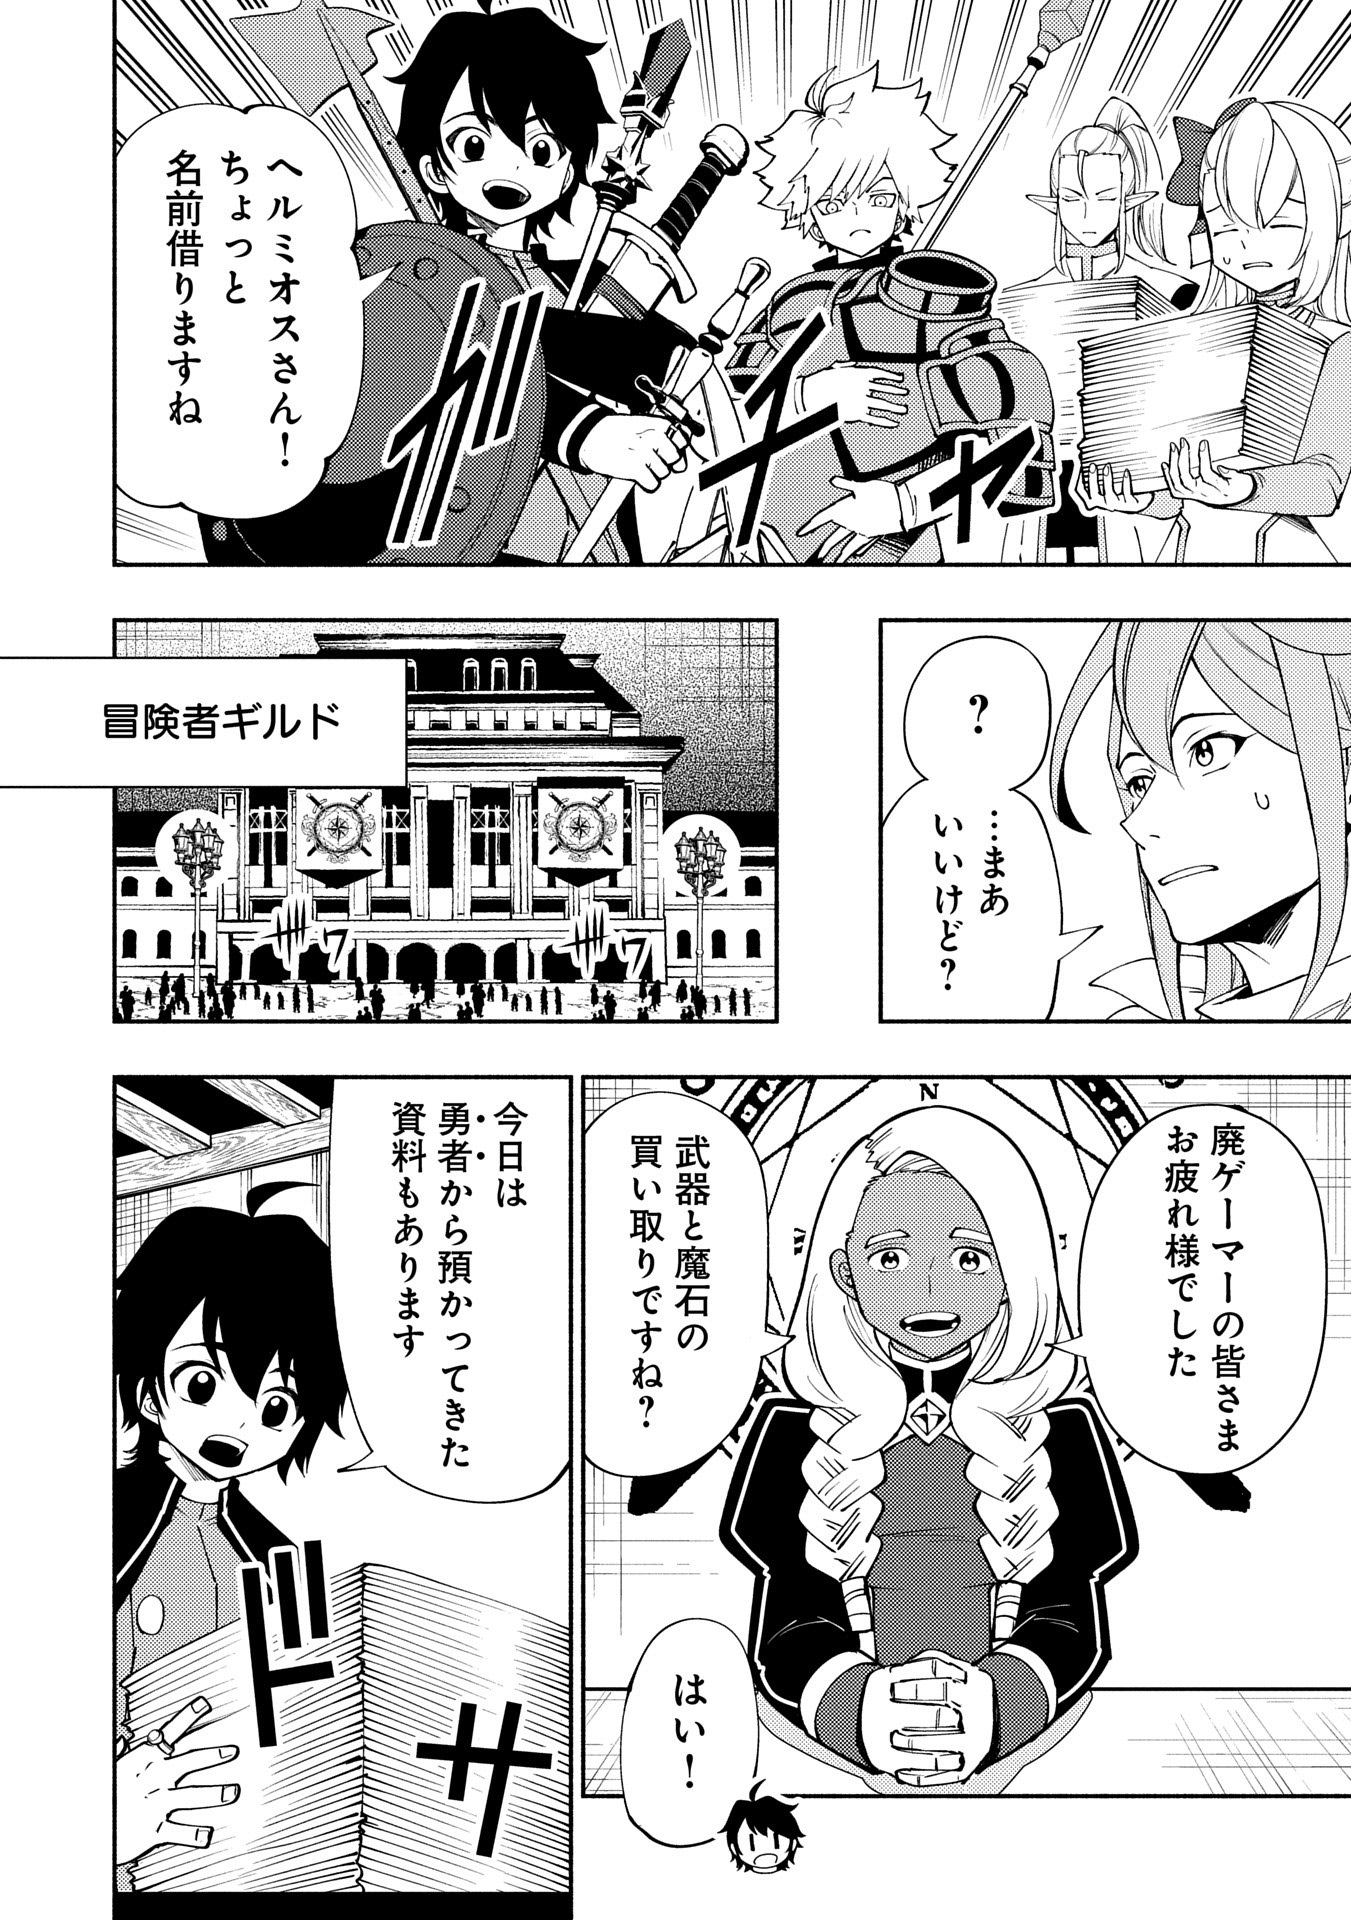 Hell Mode: Yarikomi Suki no Gamer wa Hai Settei no Isekai de Musou Suru - Chapter 65 - Page 2